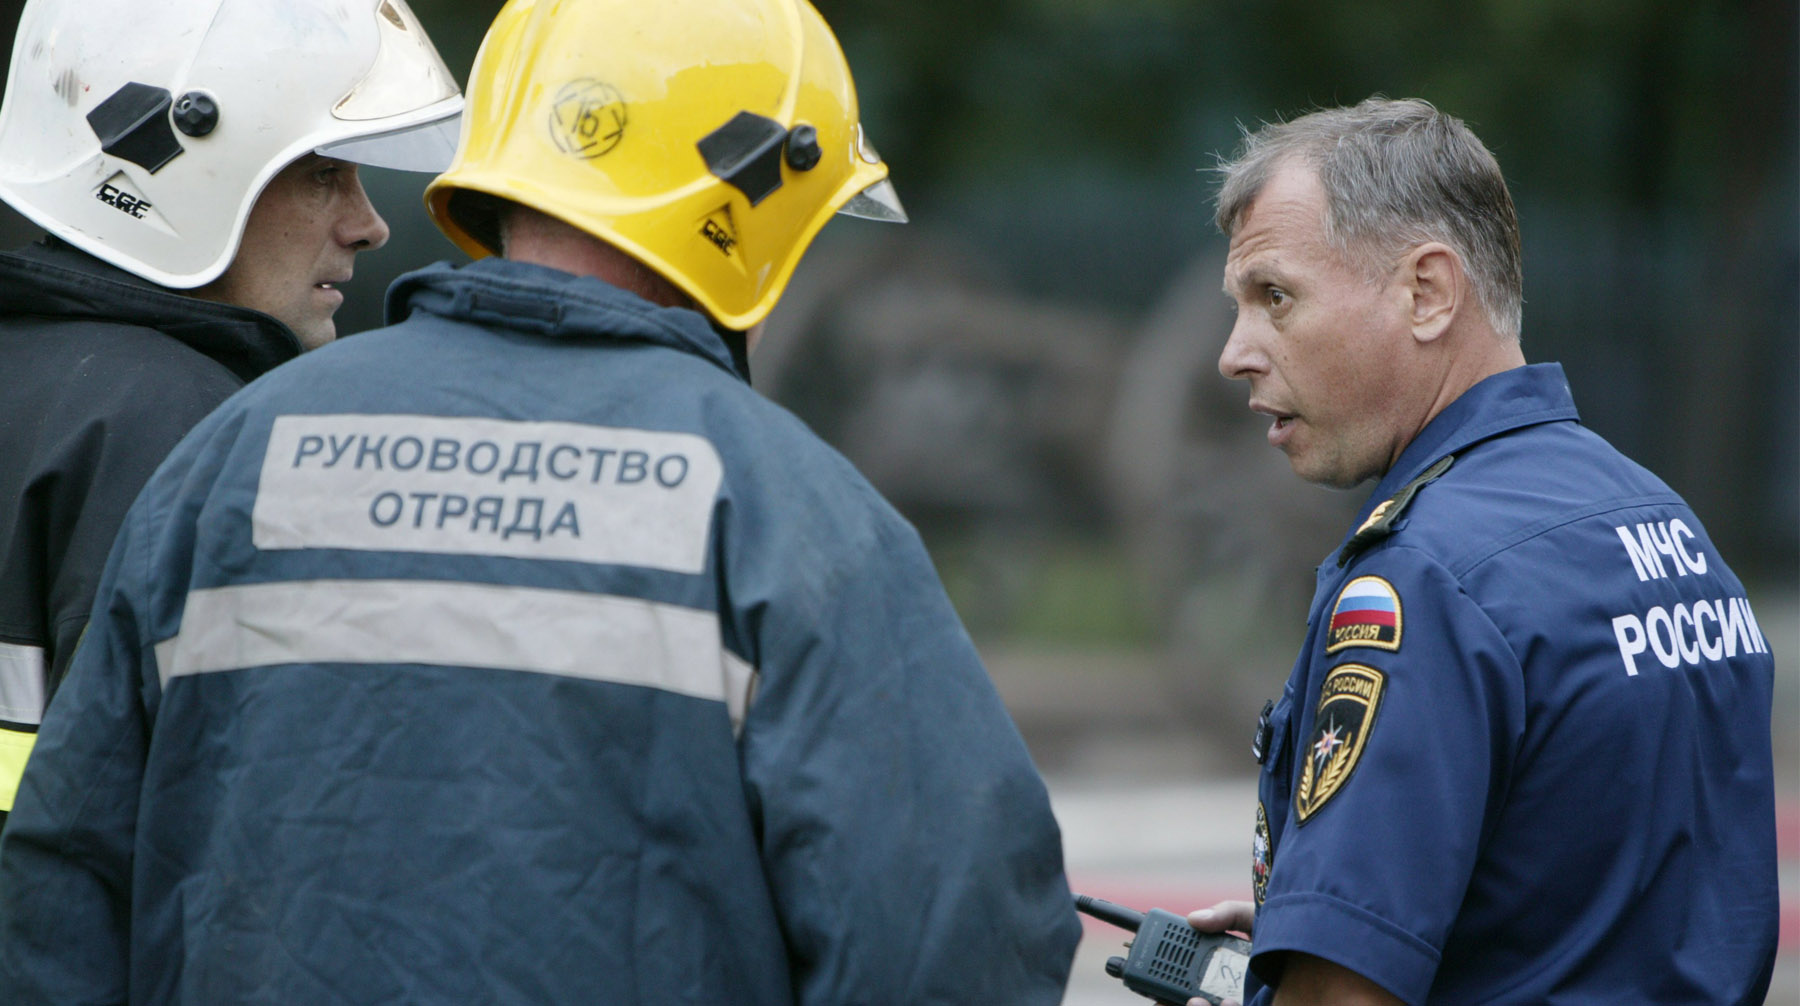 На место инцидента направлены дополнительные бригады МЧС © GLOBAL LOOK press / Semen Likhodeev